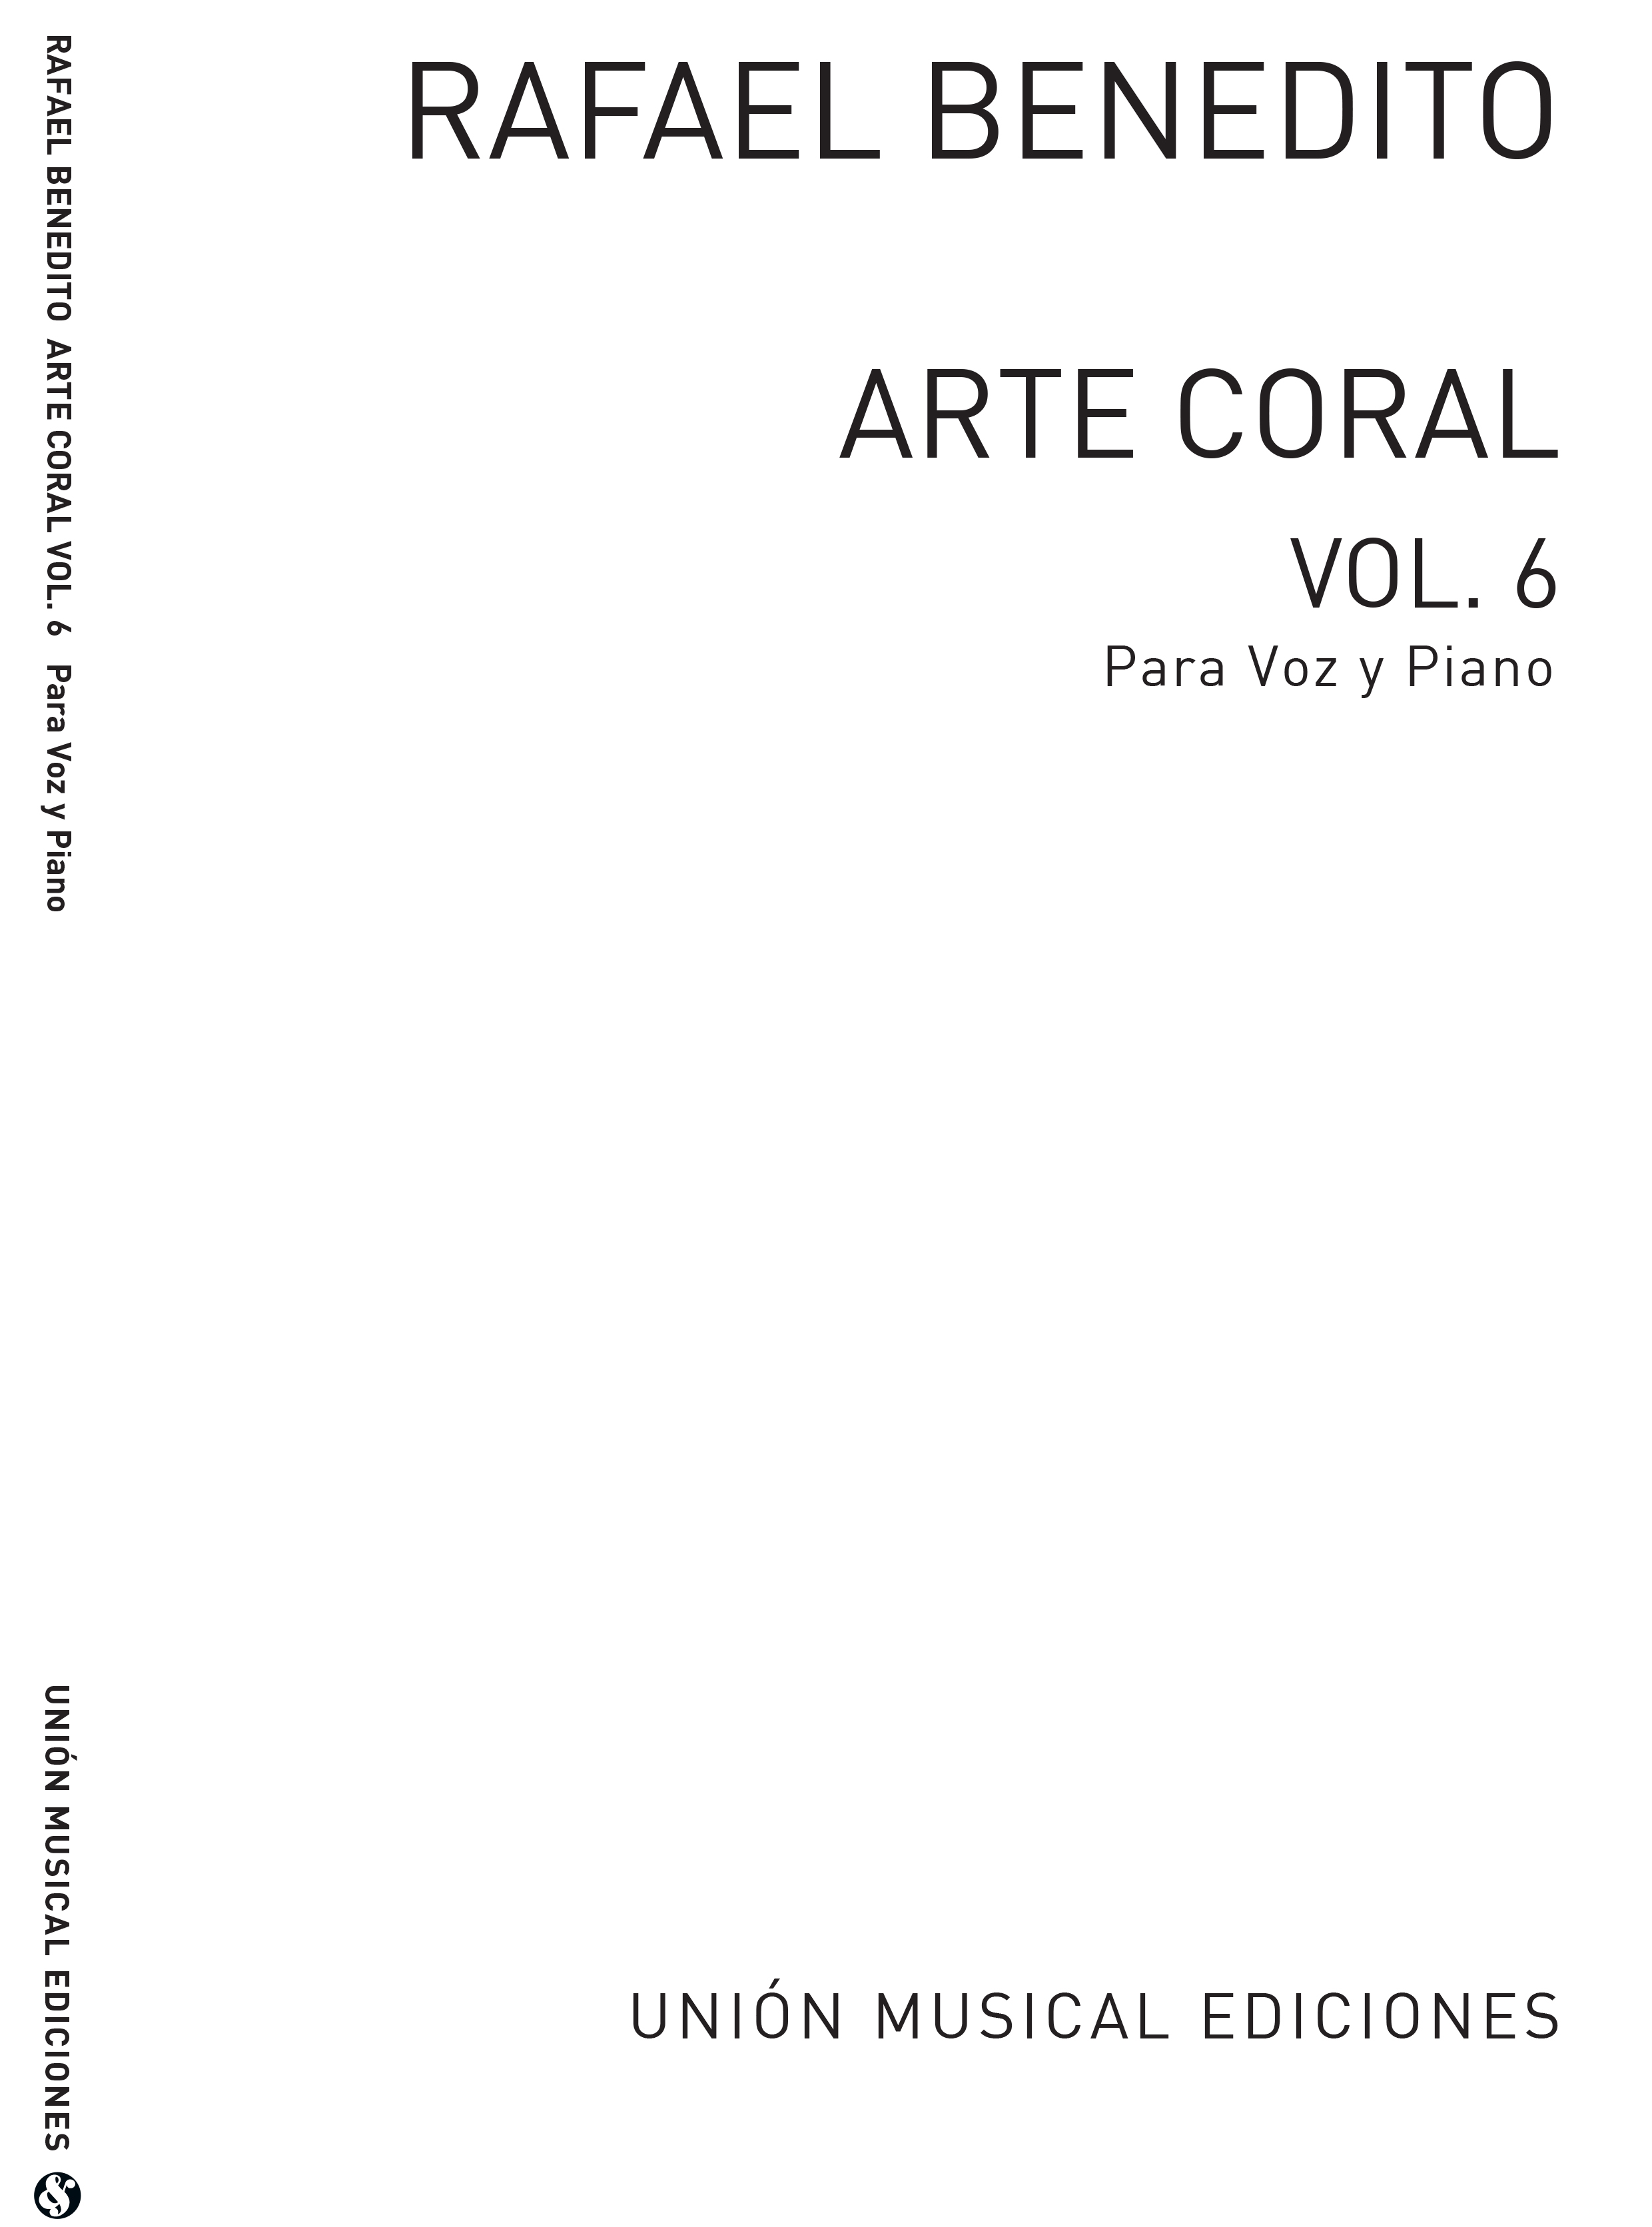 Benedito: Arte Coral Vol 6 for V.M. for choir